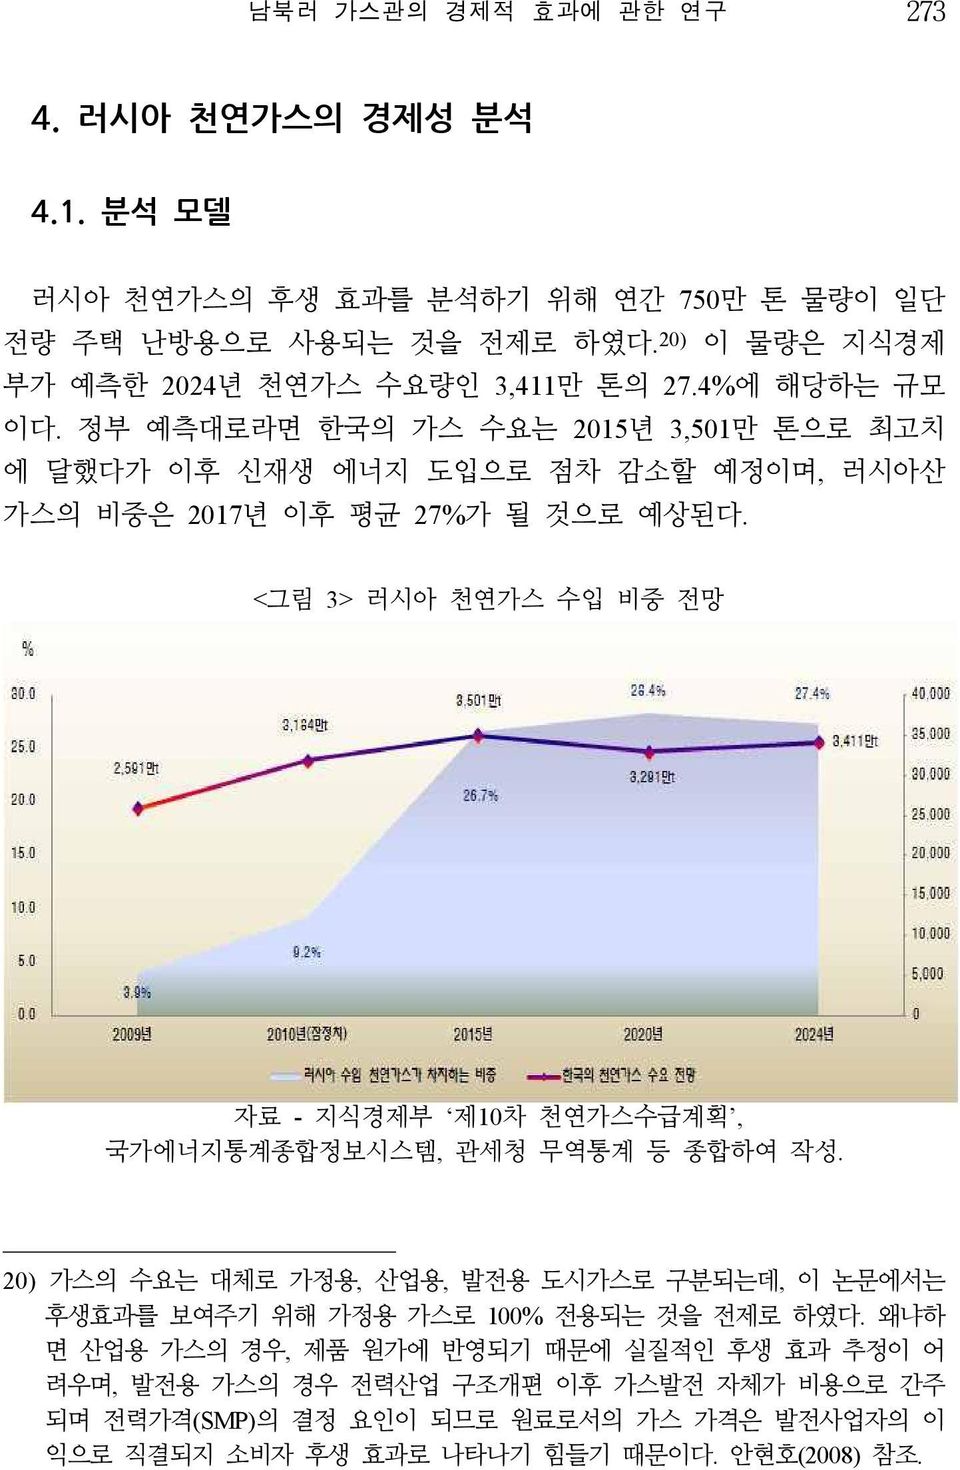 정부 예측대로라면 한국의 가스 수요는 2015년 3,501만 톤으로 최고치 에 달했다가 이후 신재생 에너지 도입으로 점차 감소할 예정이며, 러시아산 가스의 비중은 2017년 이후 평균 27%가 될 것으로 예상된다.